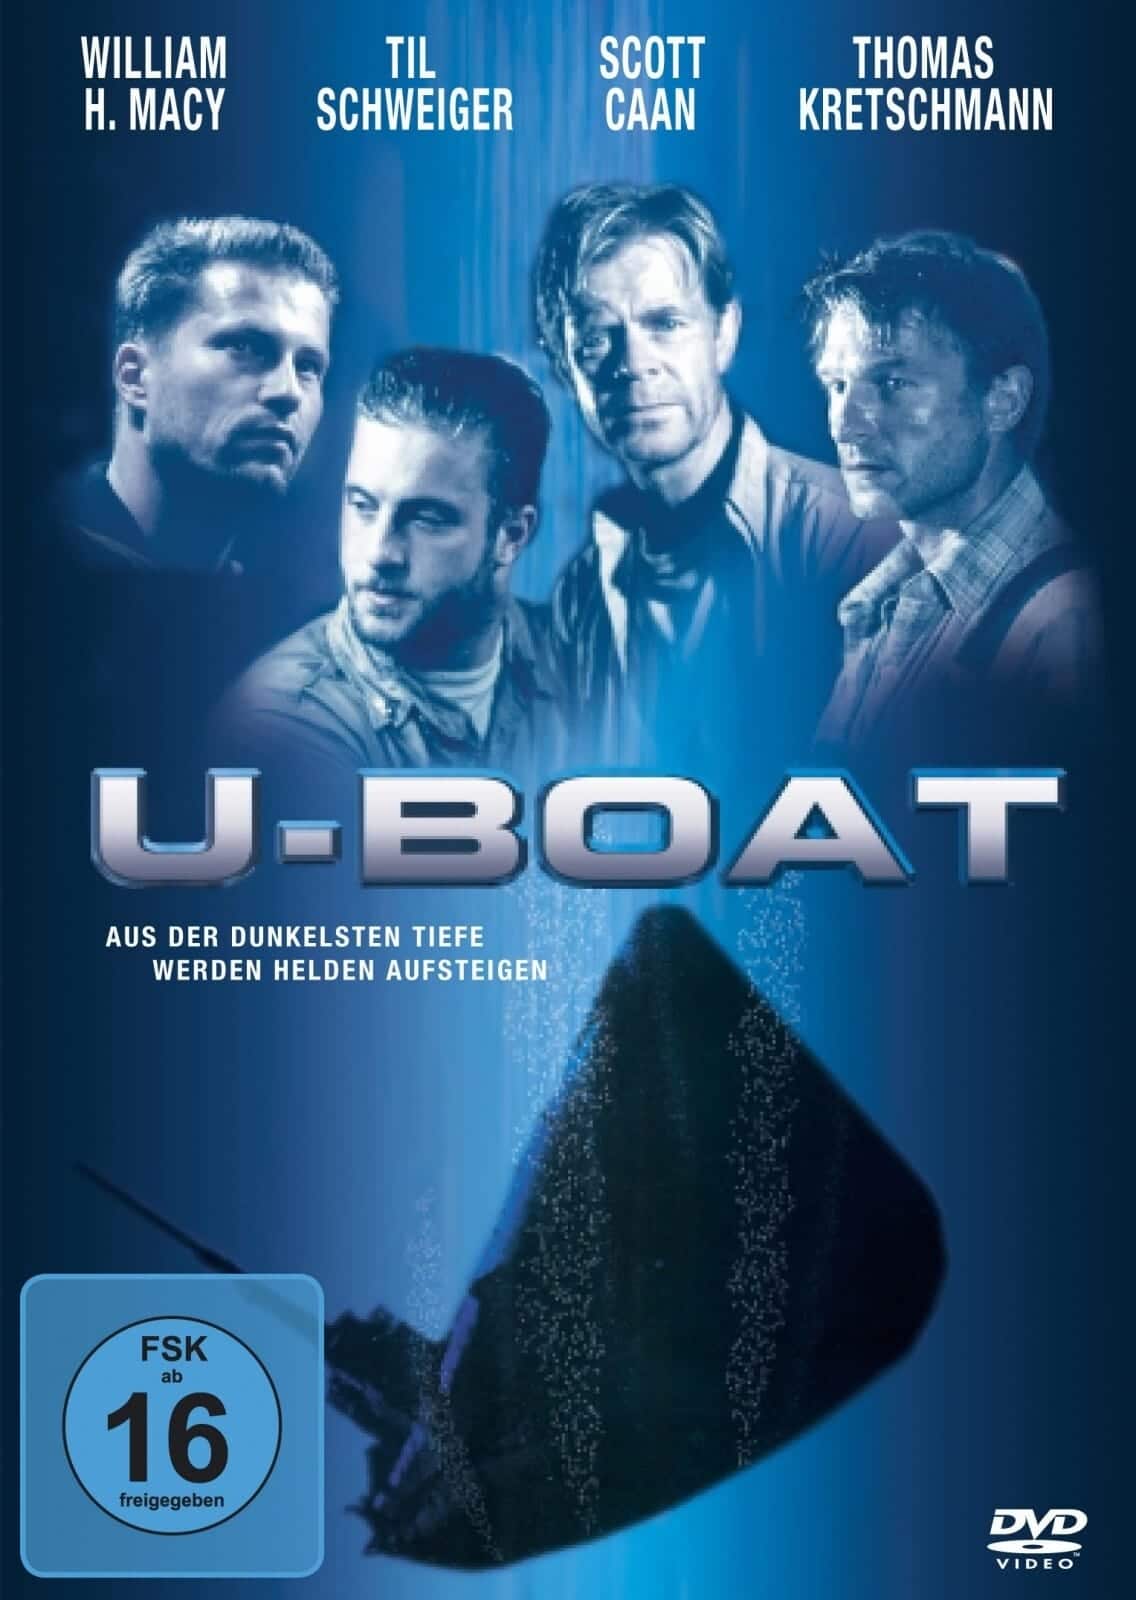 Plakat von "U-Boat"